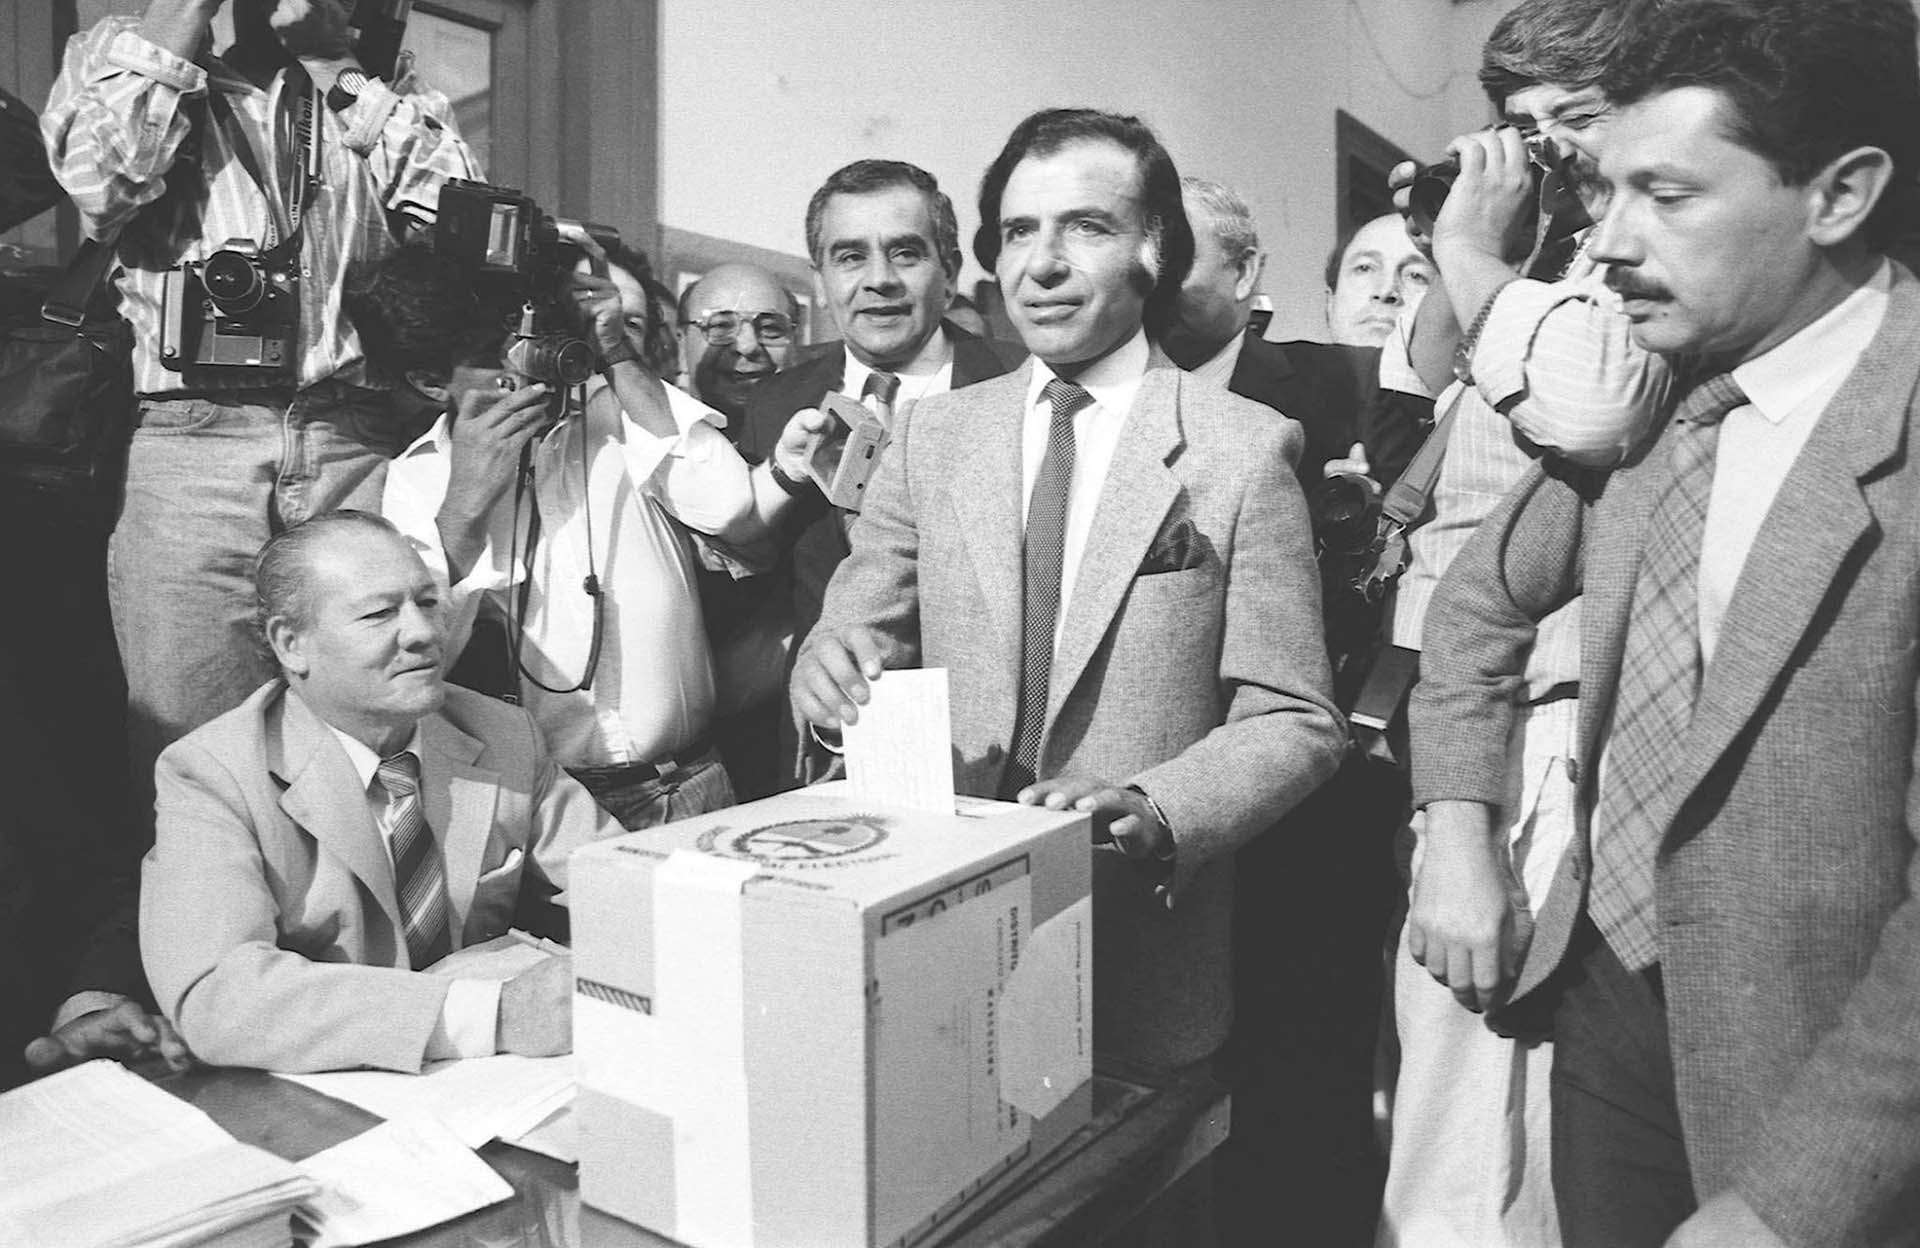 El 14 de mayo de 1989, Menem compitió en las elecciones presidenciales contra el candidato del radicalismo Eduardo César Angeloz. Lideró la fórmula del Frente Justicialista Popular y se impuso con el 49,3% de los votos